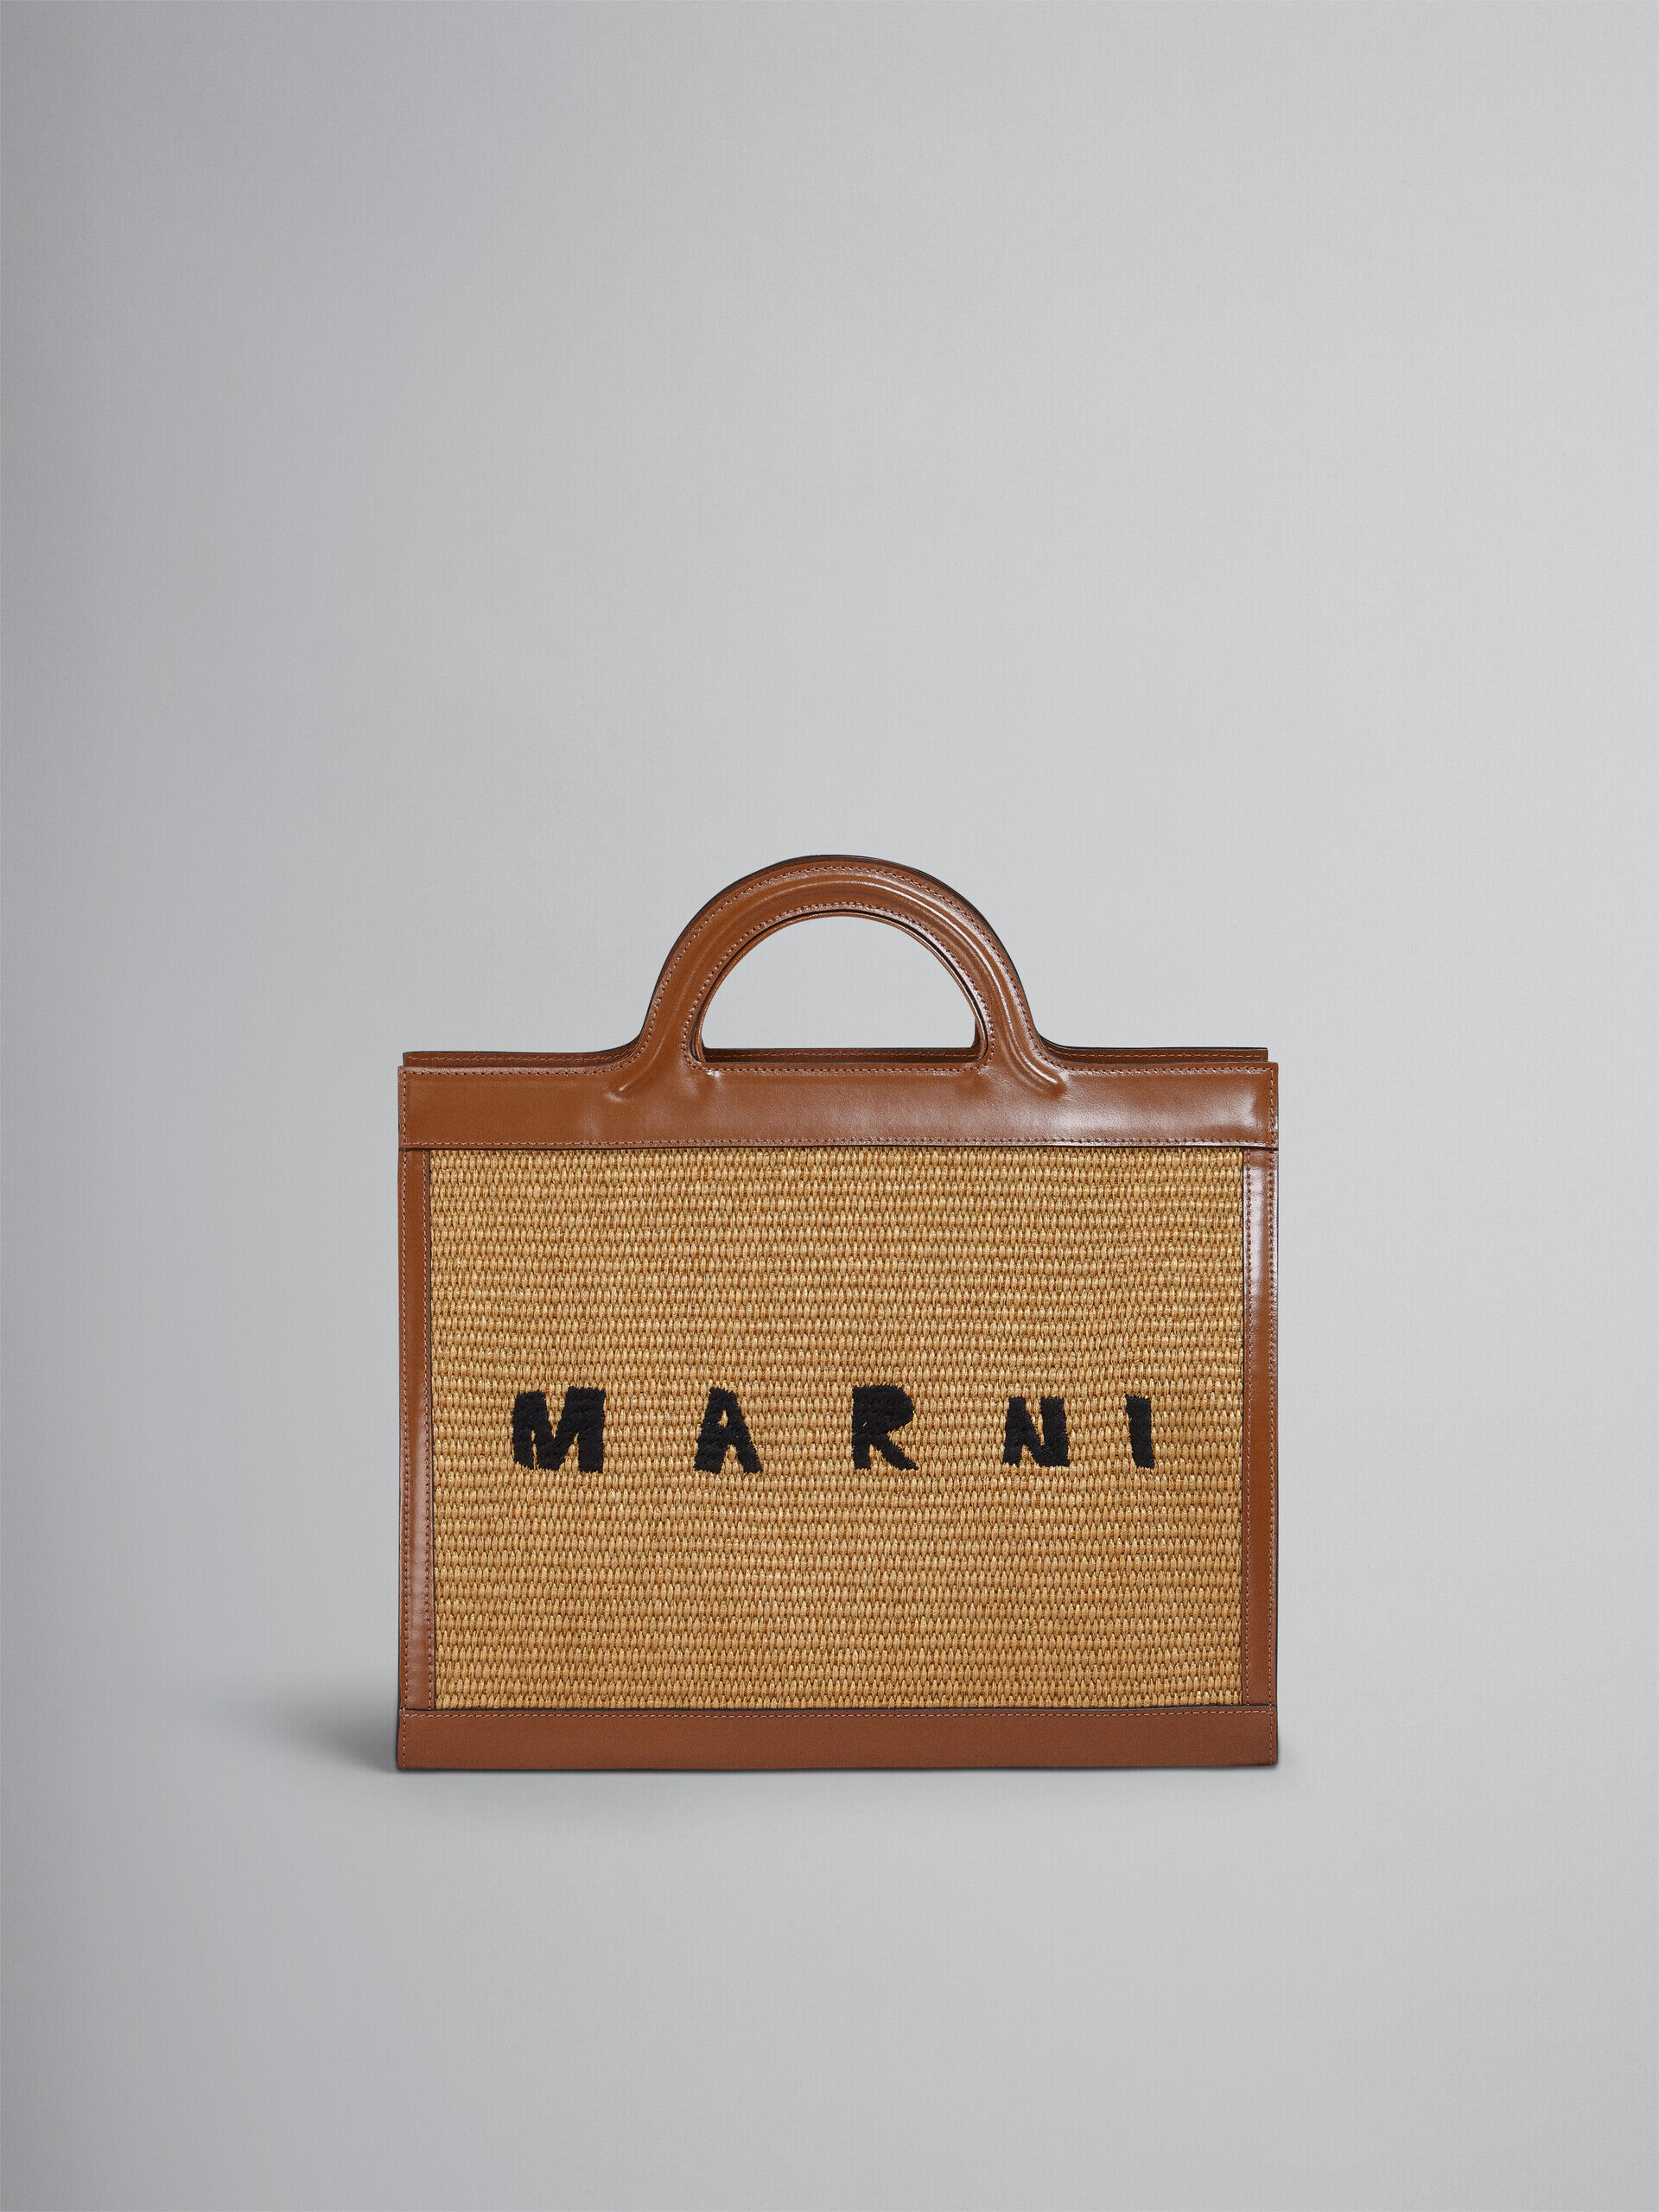 New in | Marni